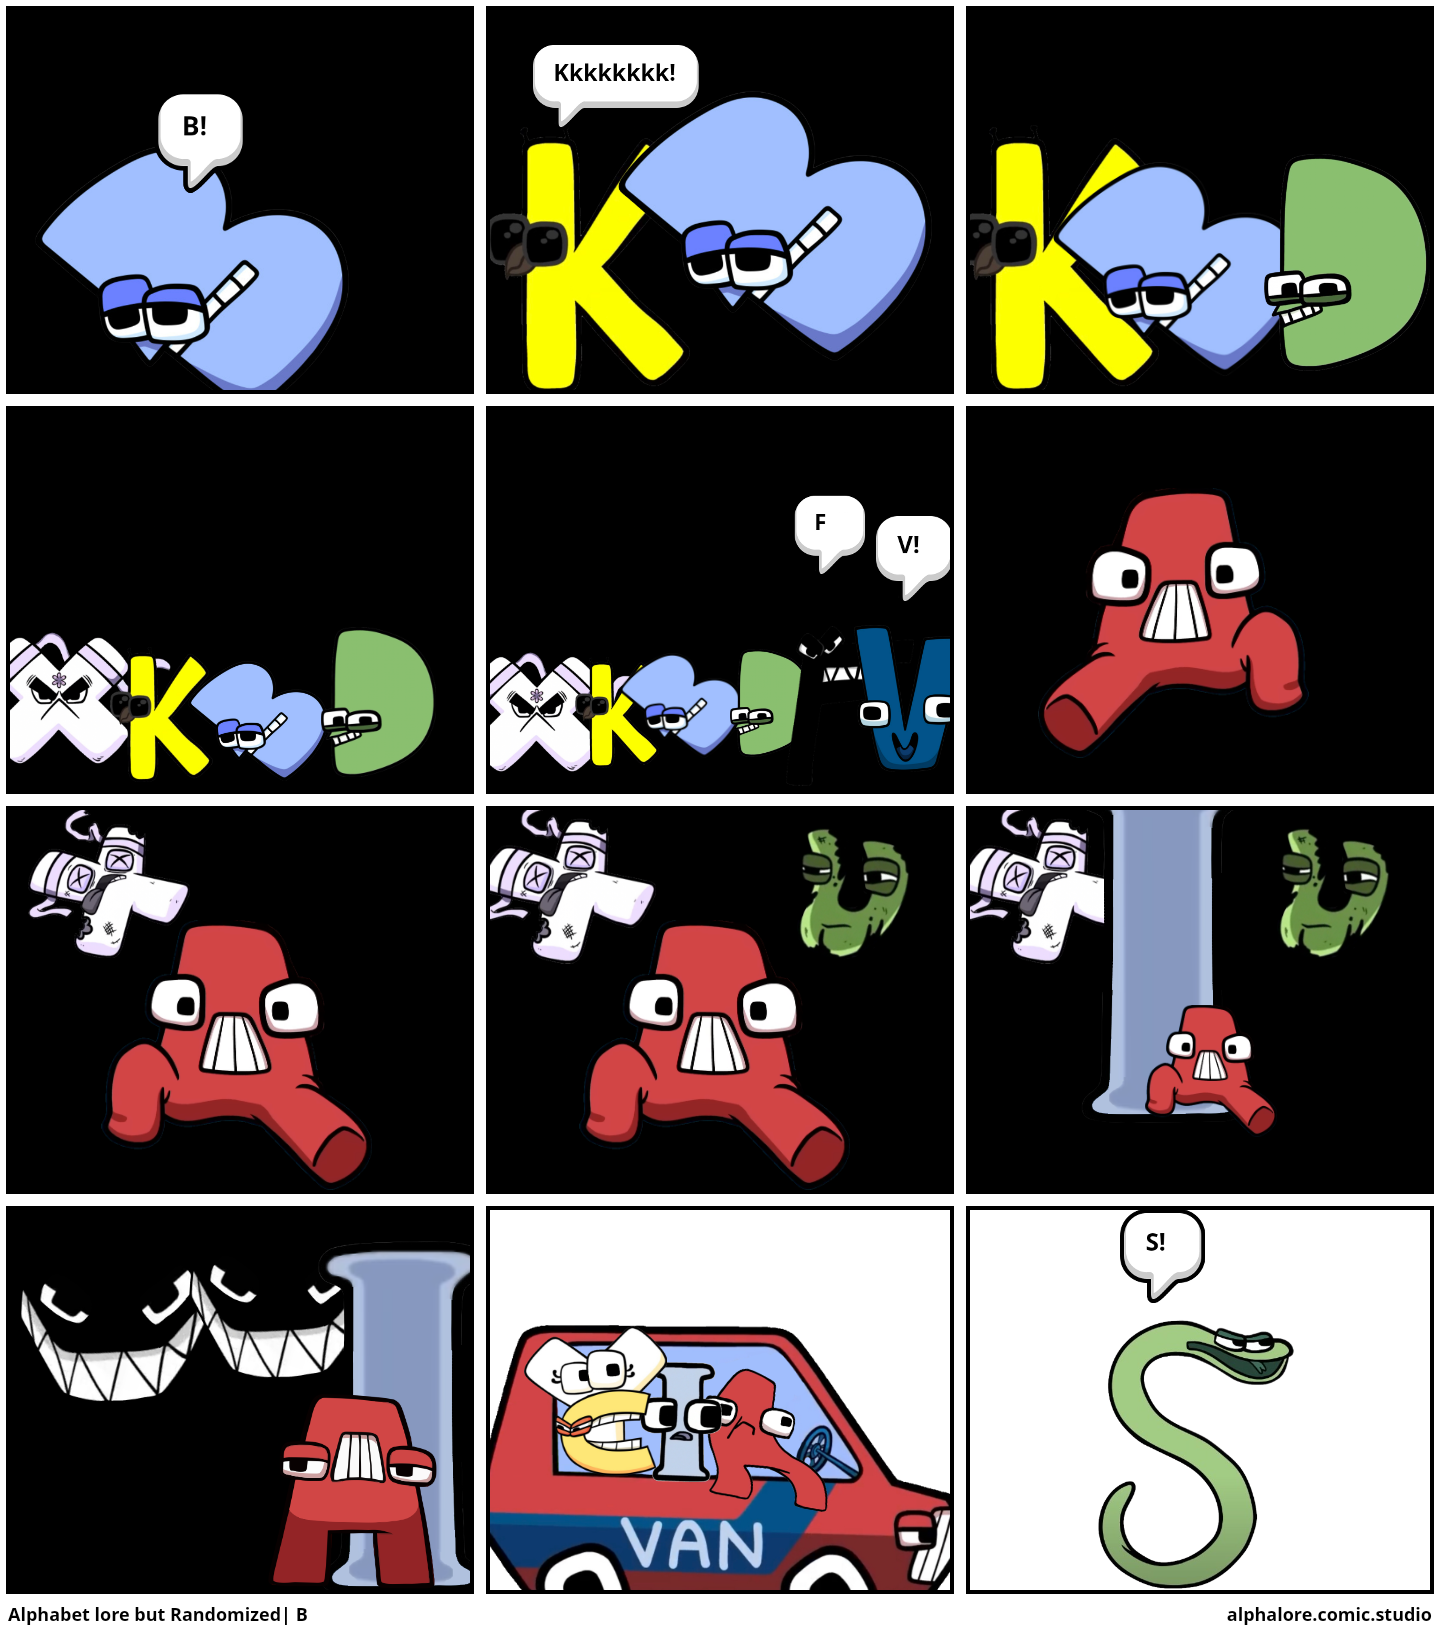 Alphabet Lore but randomized: Q-U - Comic Studio